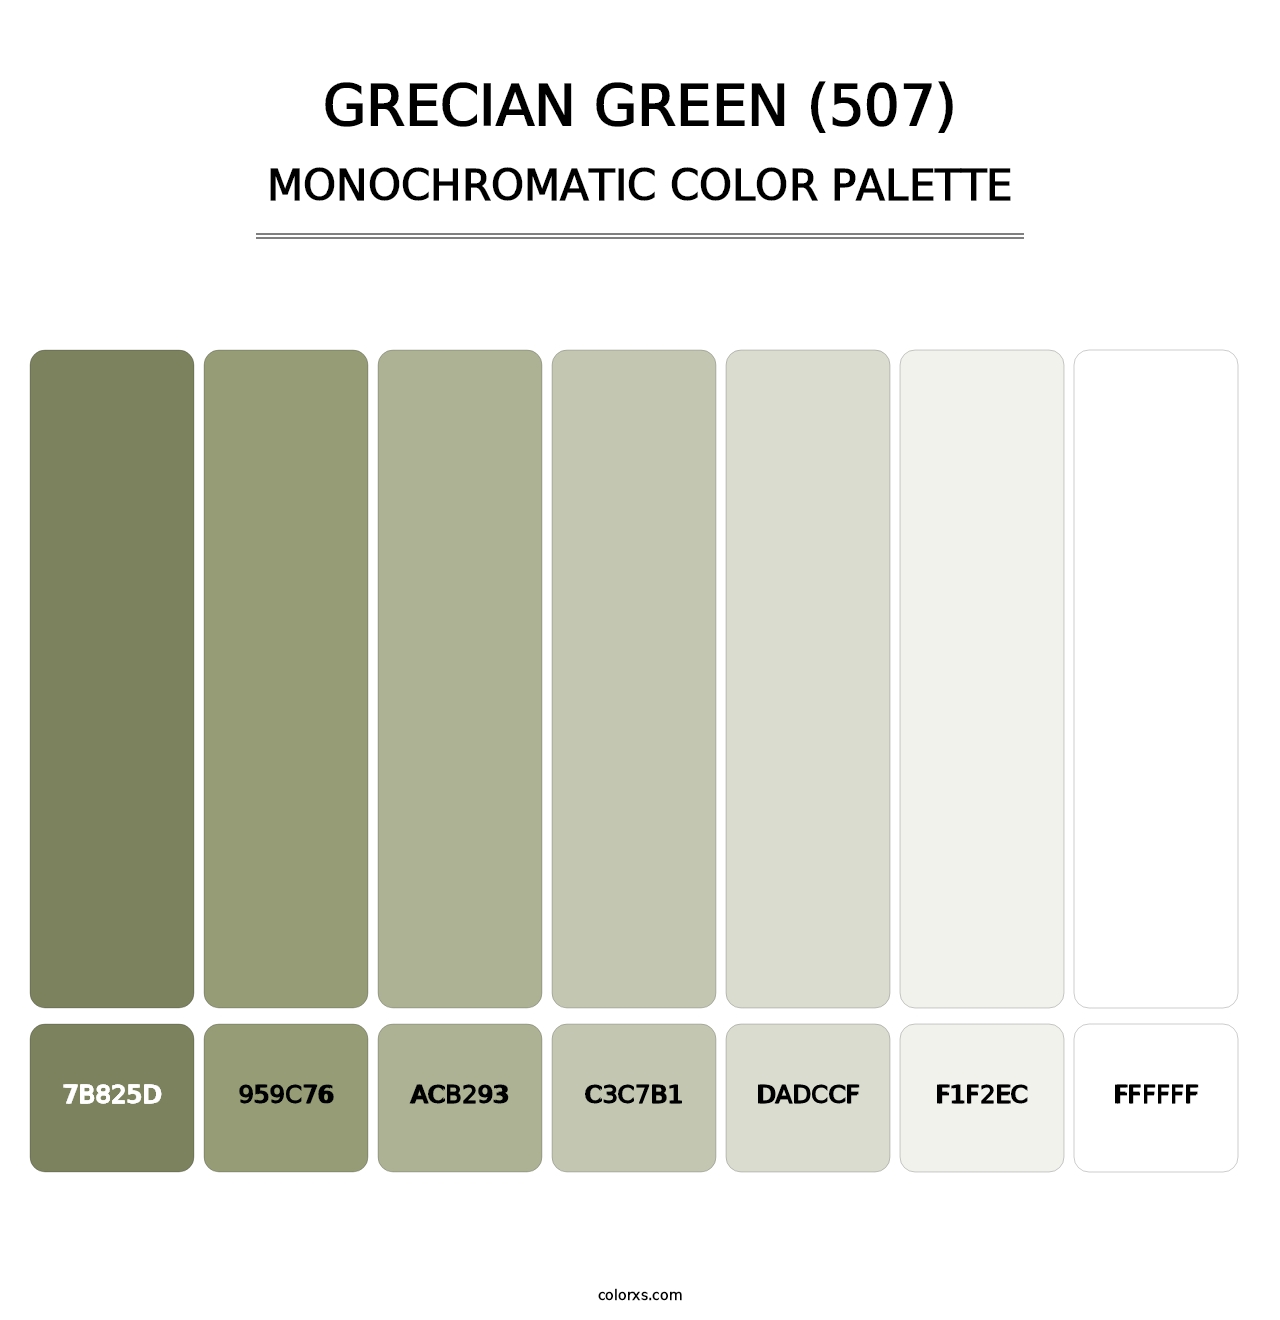 Grecian Green (507) - Monochromatic Color Palette